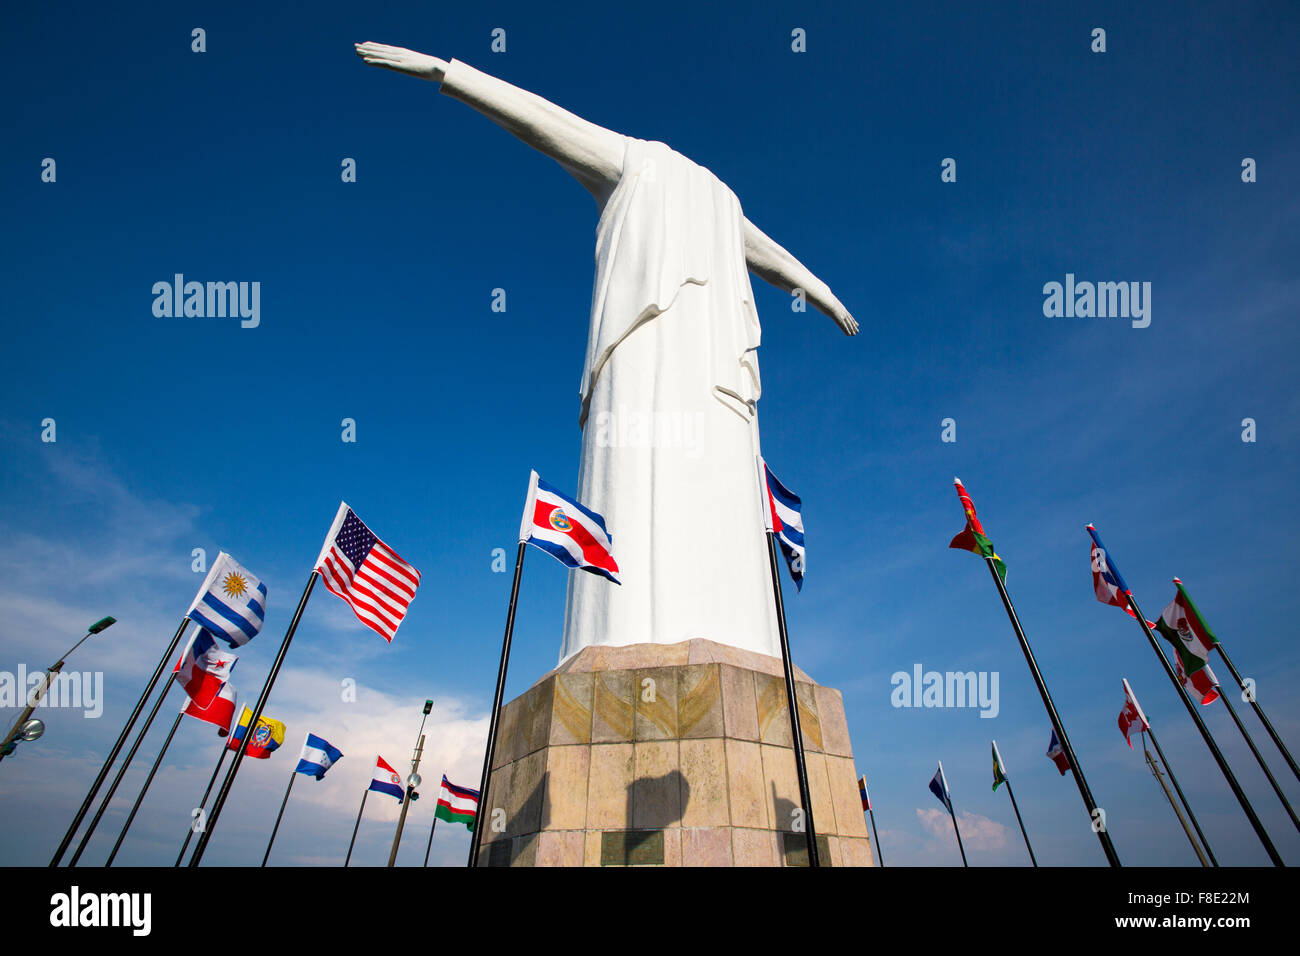 Cristo del Rey statue de Cali contre un ciel bleu avec des drapeaux flottant autour. Colombie Banque D'Images